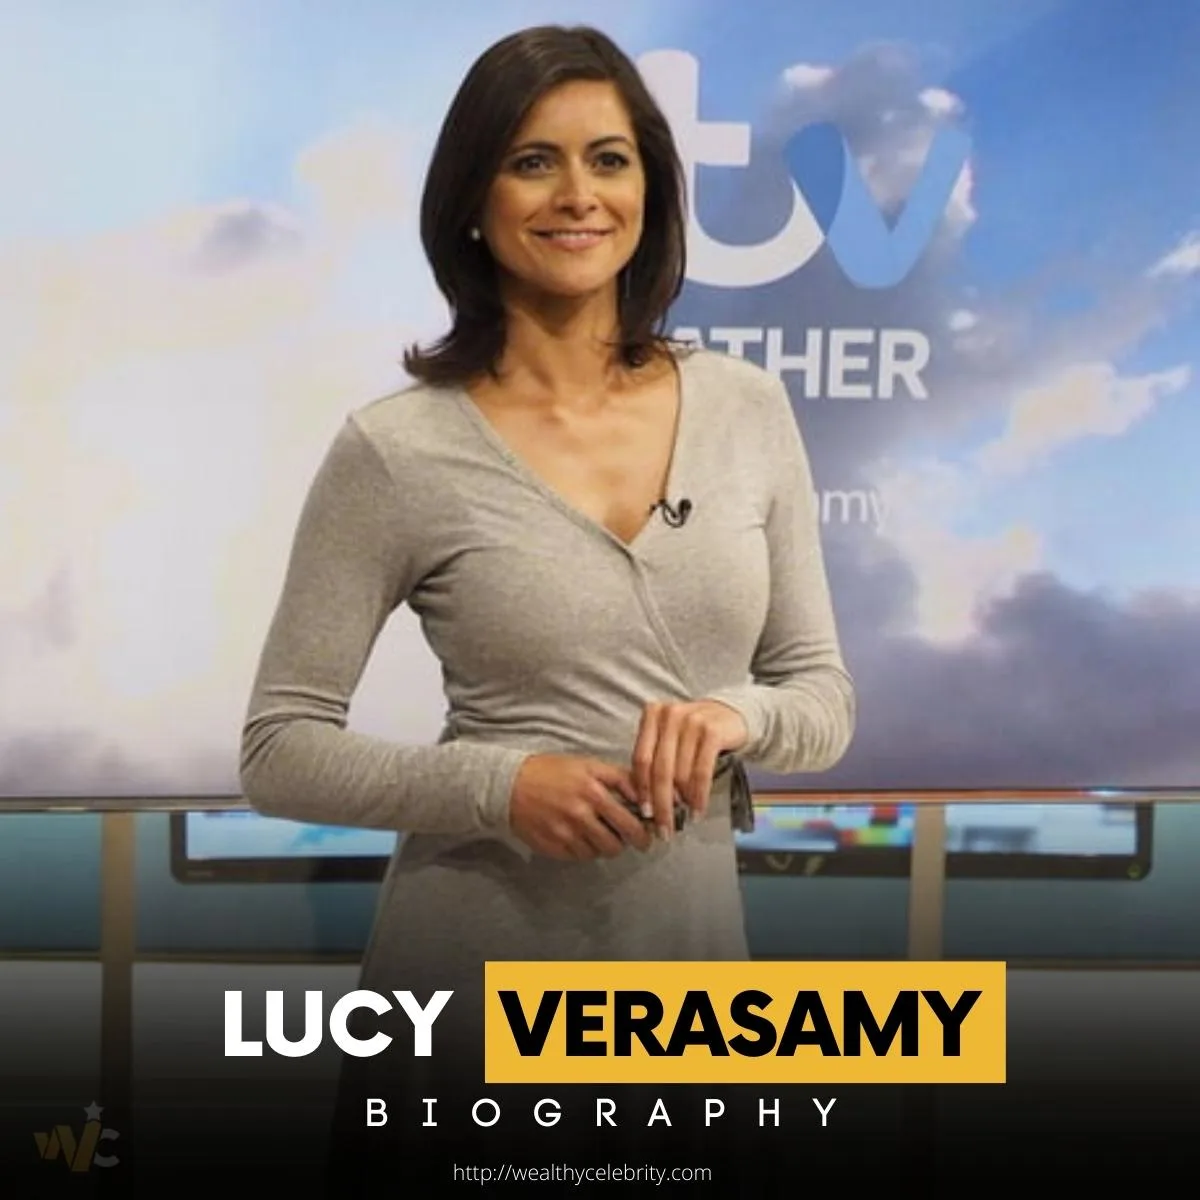 Lucy Verasamy